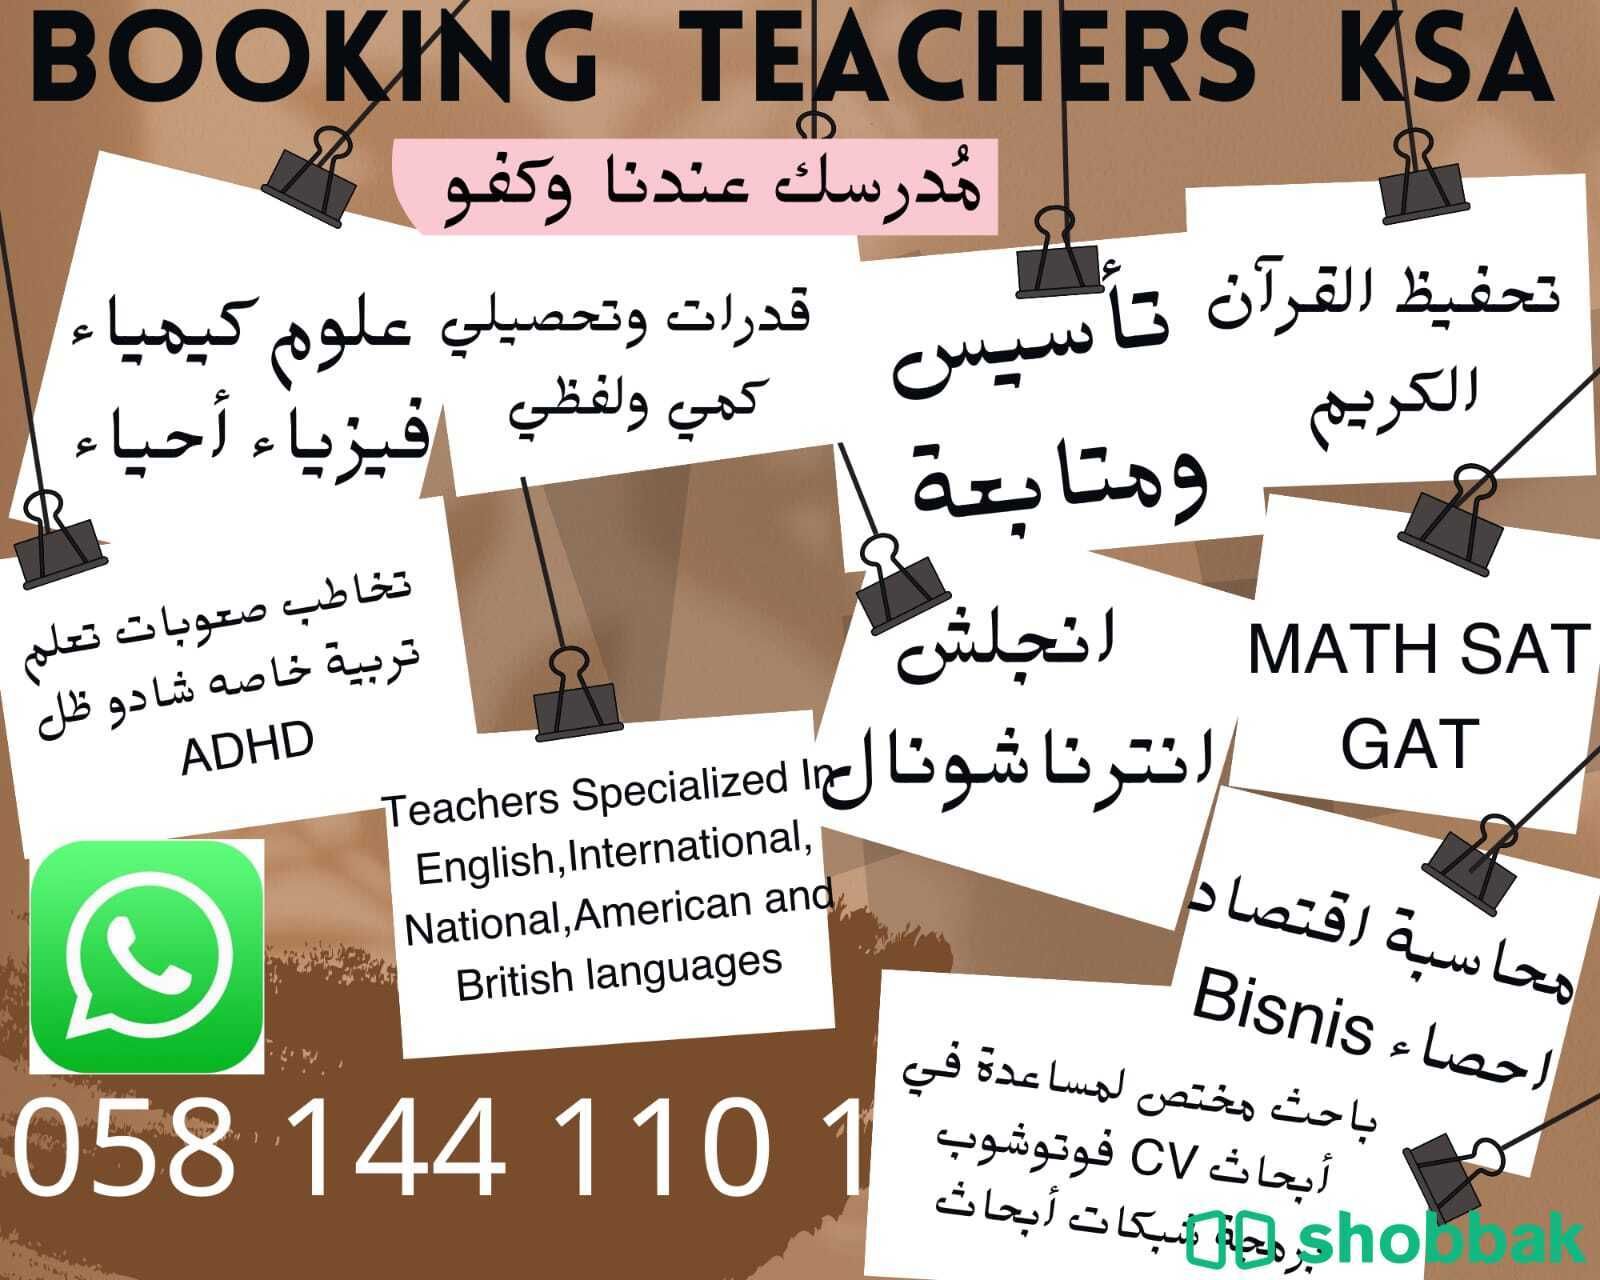 معلمة متخصصة في الرياض 0581441101  و جدة  Shobbak Saudi Arabia